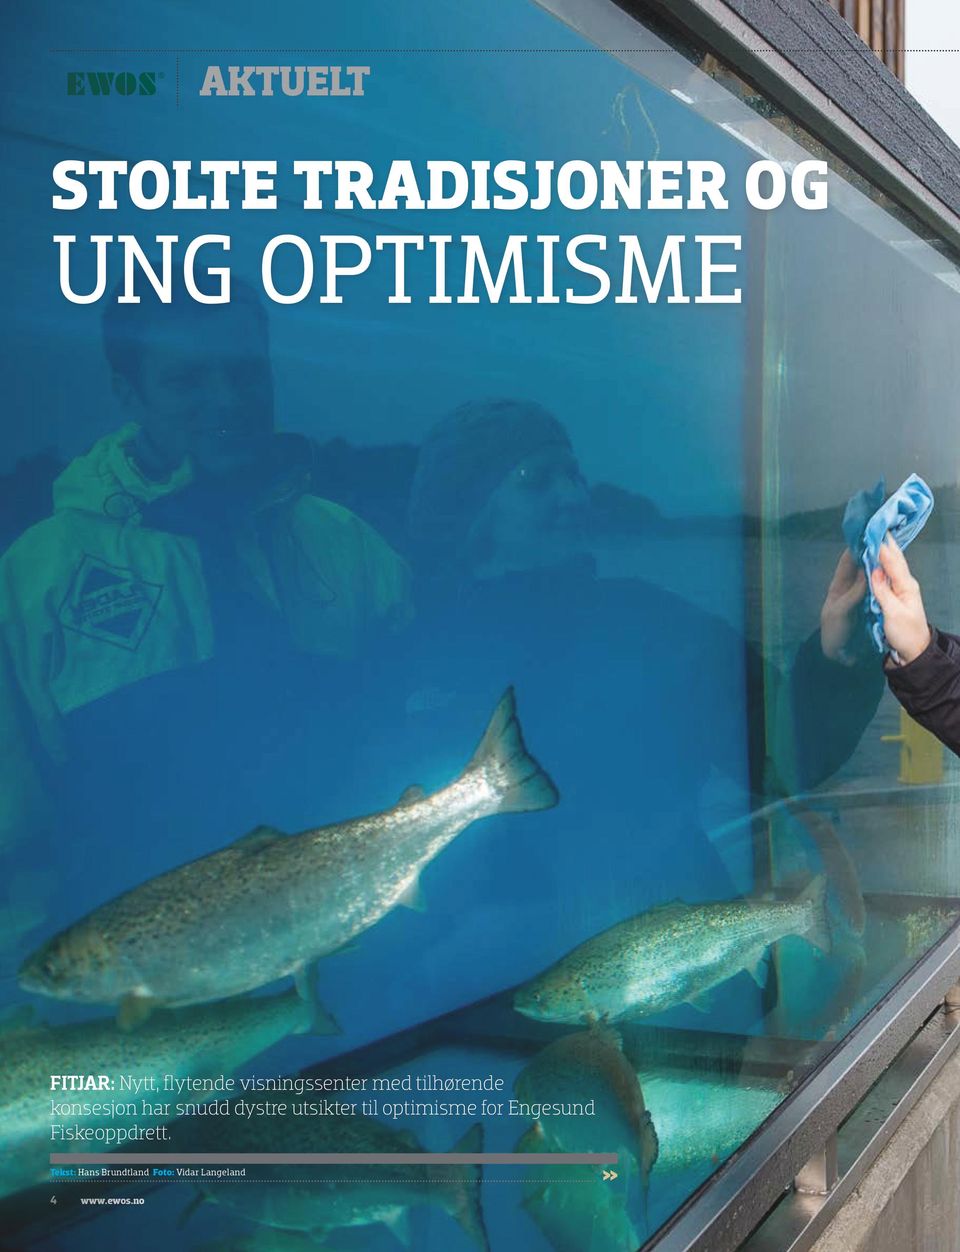 dystre utsikter til optimisme for Engesund Fiskeoppdrett.